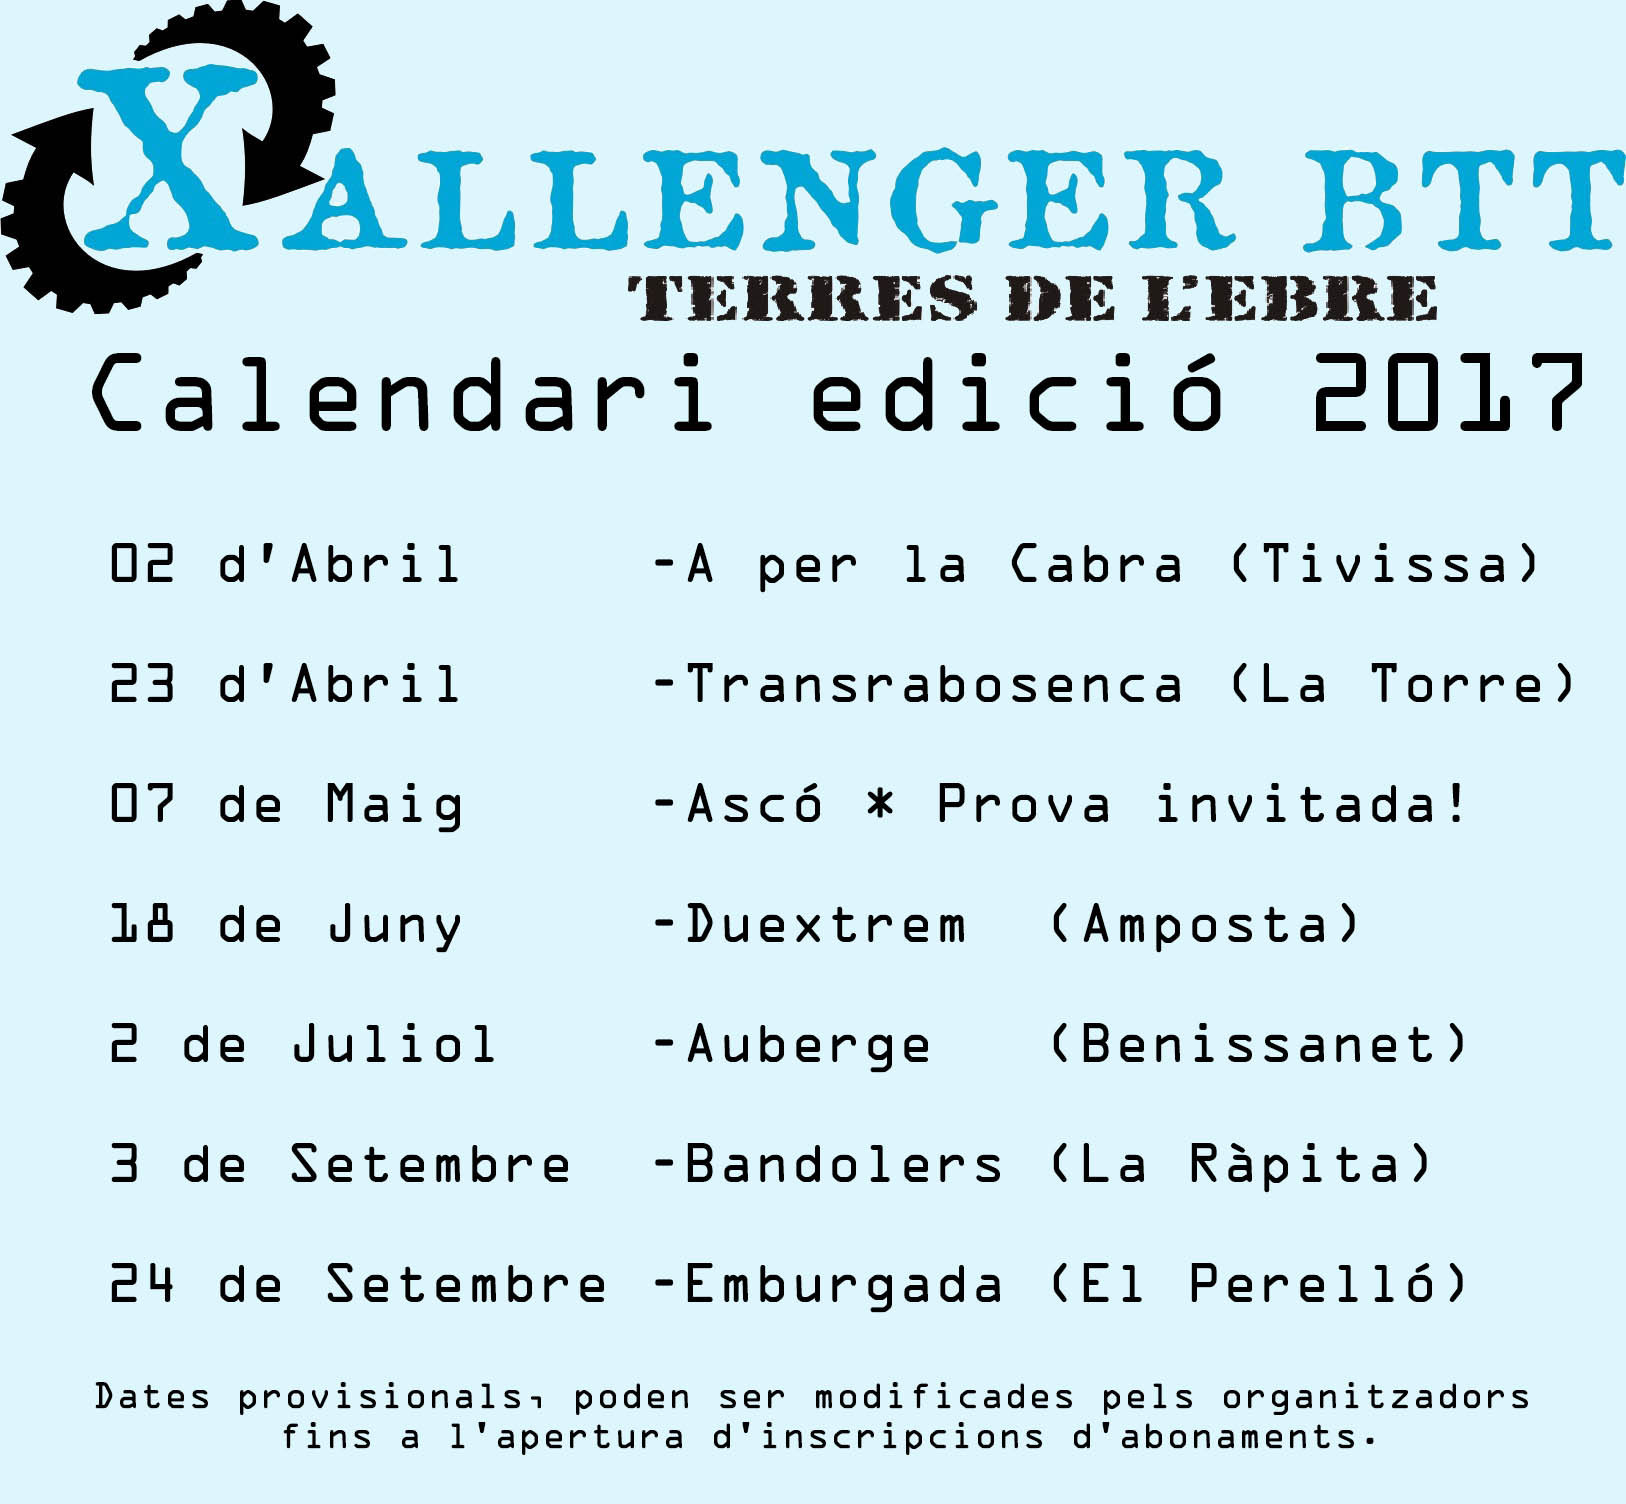 Calendari Xallenger BTT Terres de l'Ebre 2017